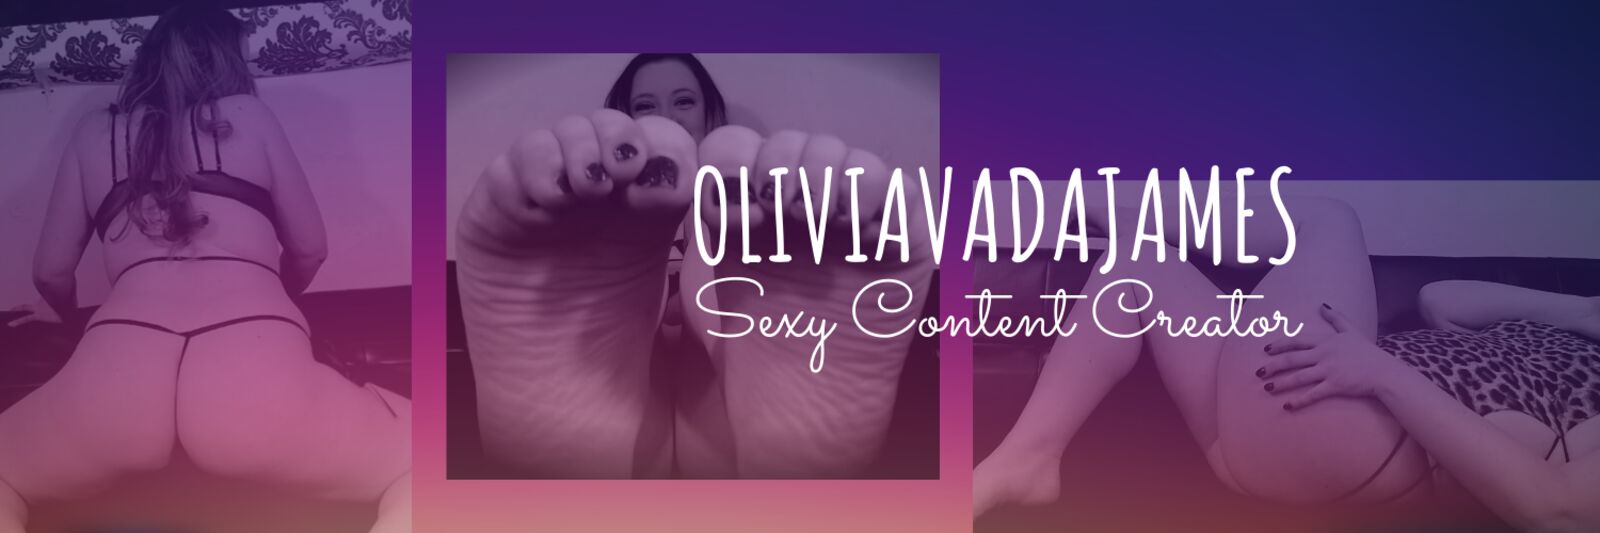 See Olivia Vada James profile